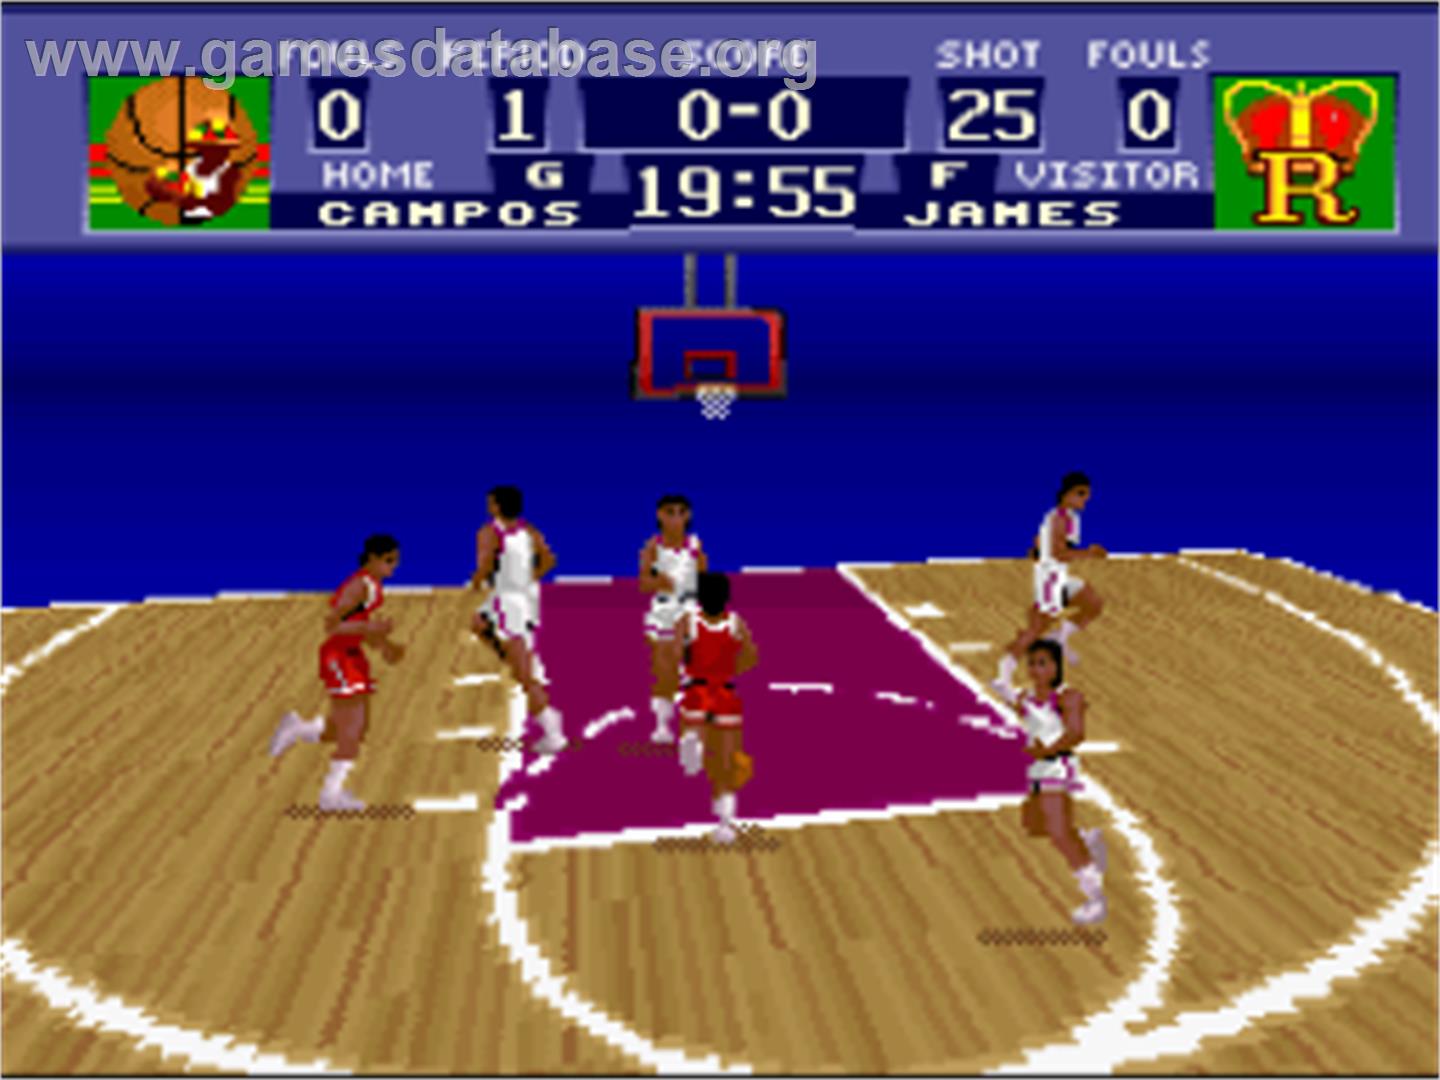 NCAA Basketball - Nintendo SNES - Artwork - In Game